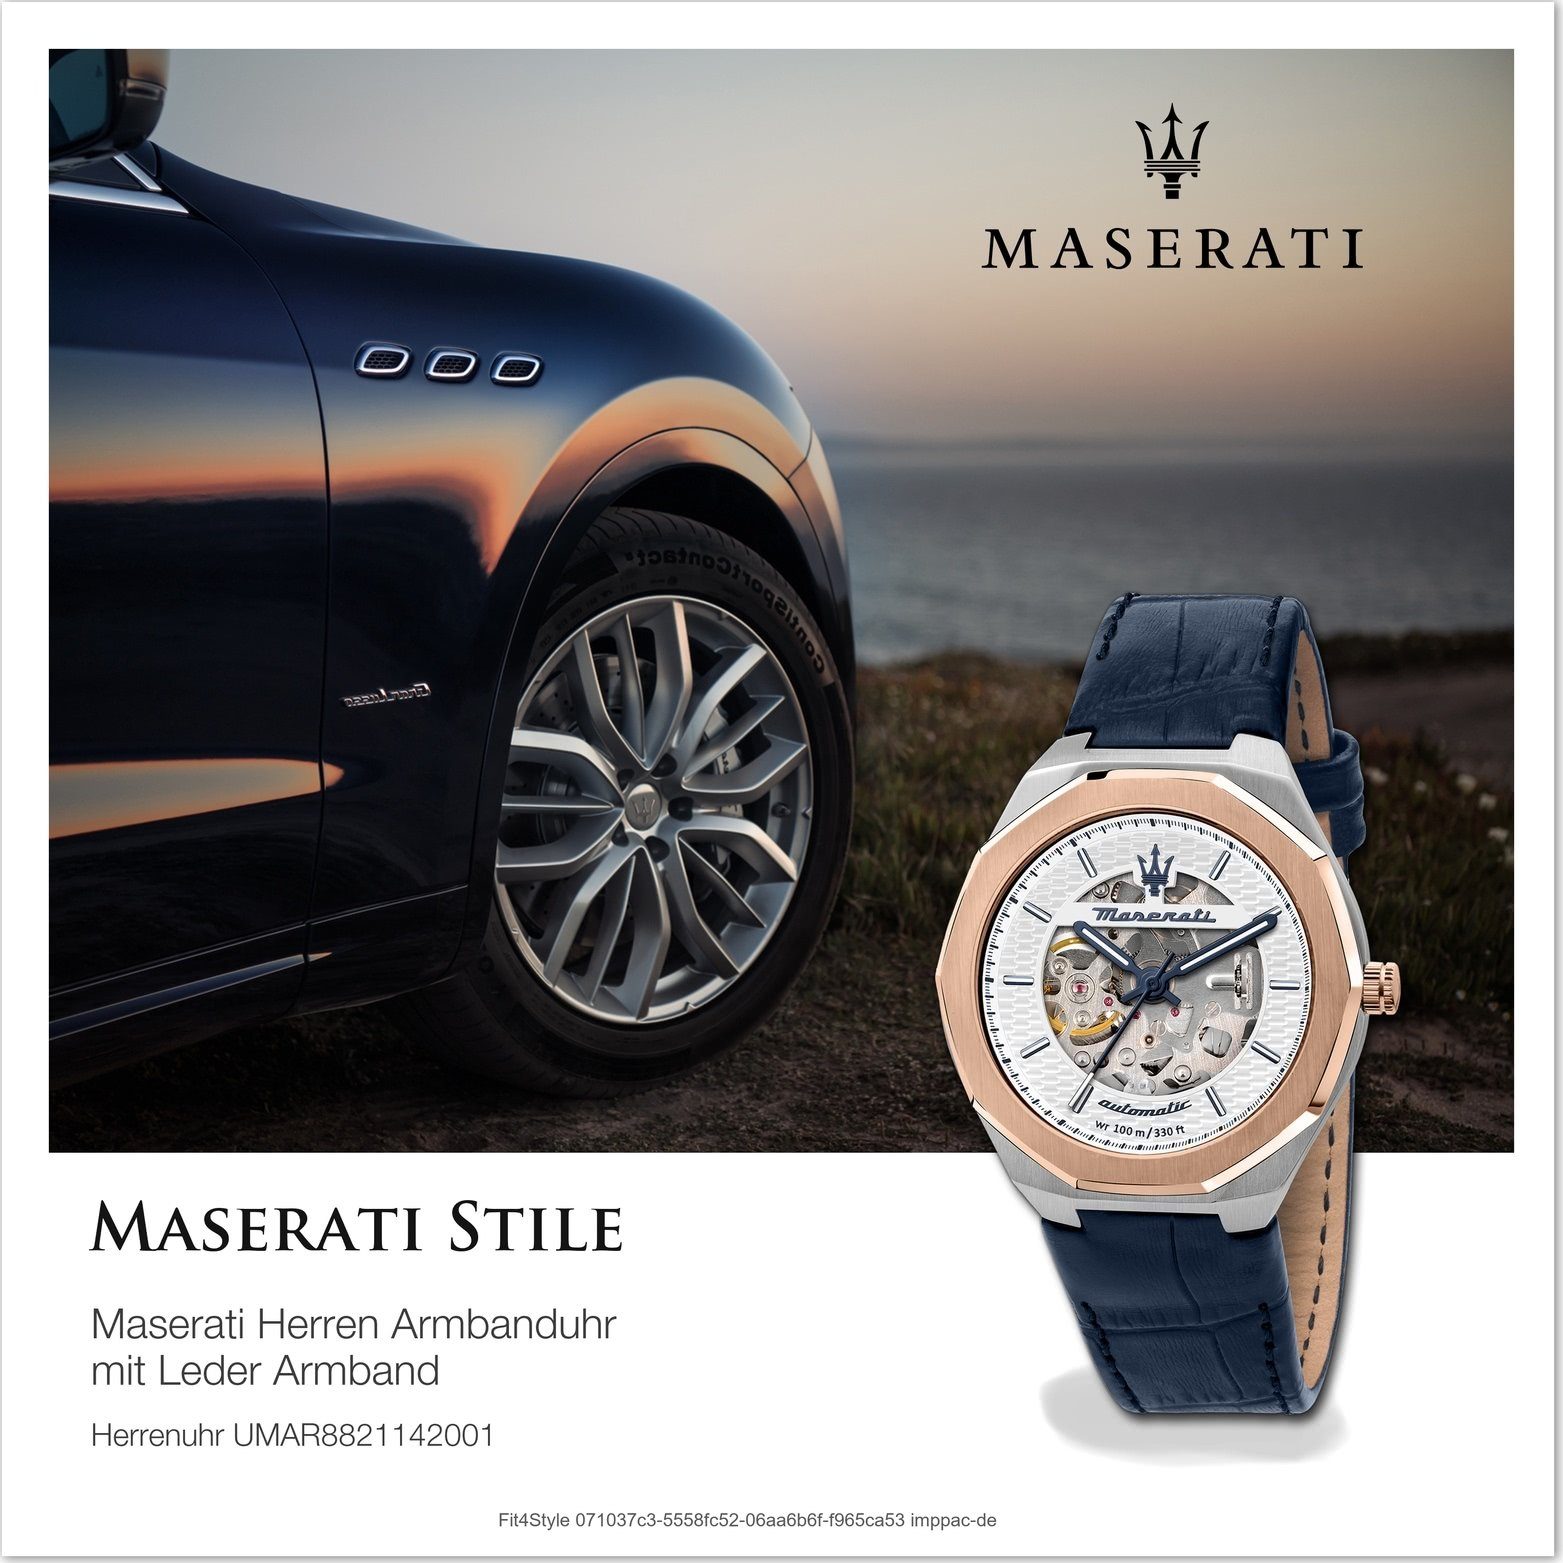 Herren Uhren MASERATI Quarzuhr D2UMAR8821142001 Maserati Leder Armband-Uhr Analog, Herrenuhr mit Lederarmband, rundes Gehäuse, g